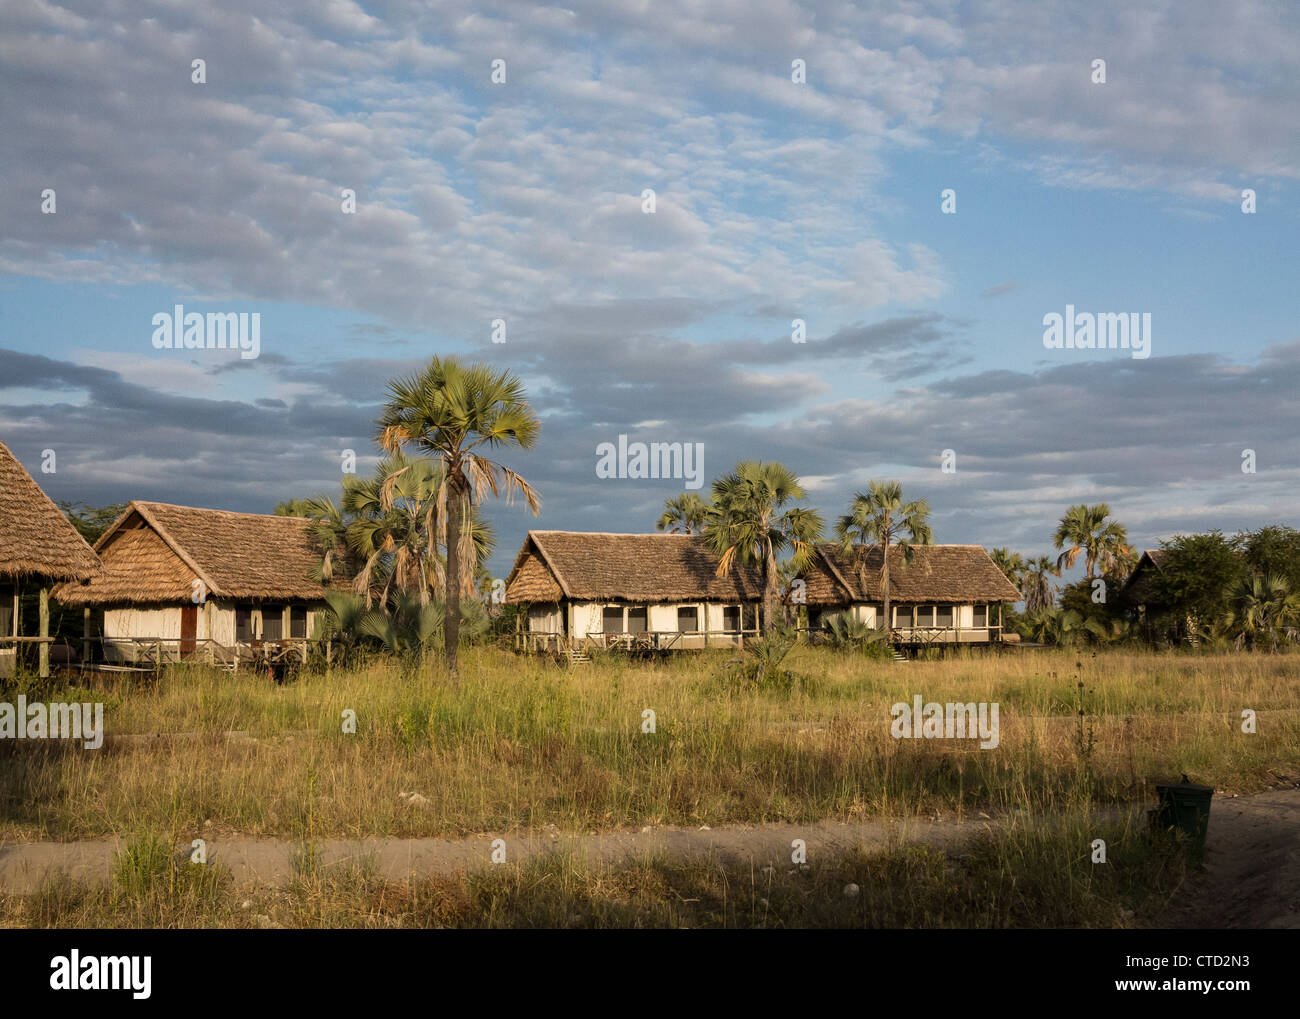 Safari Camp near lake in Tanzania Stock Photo